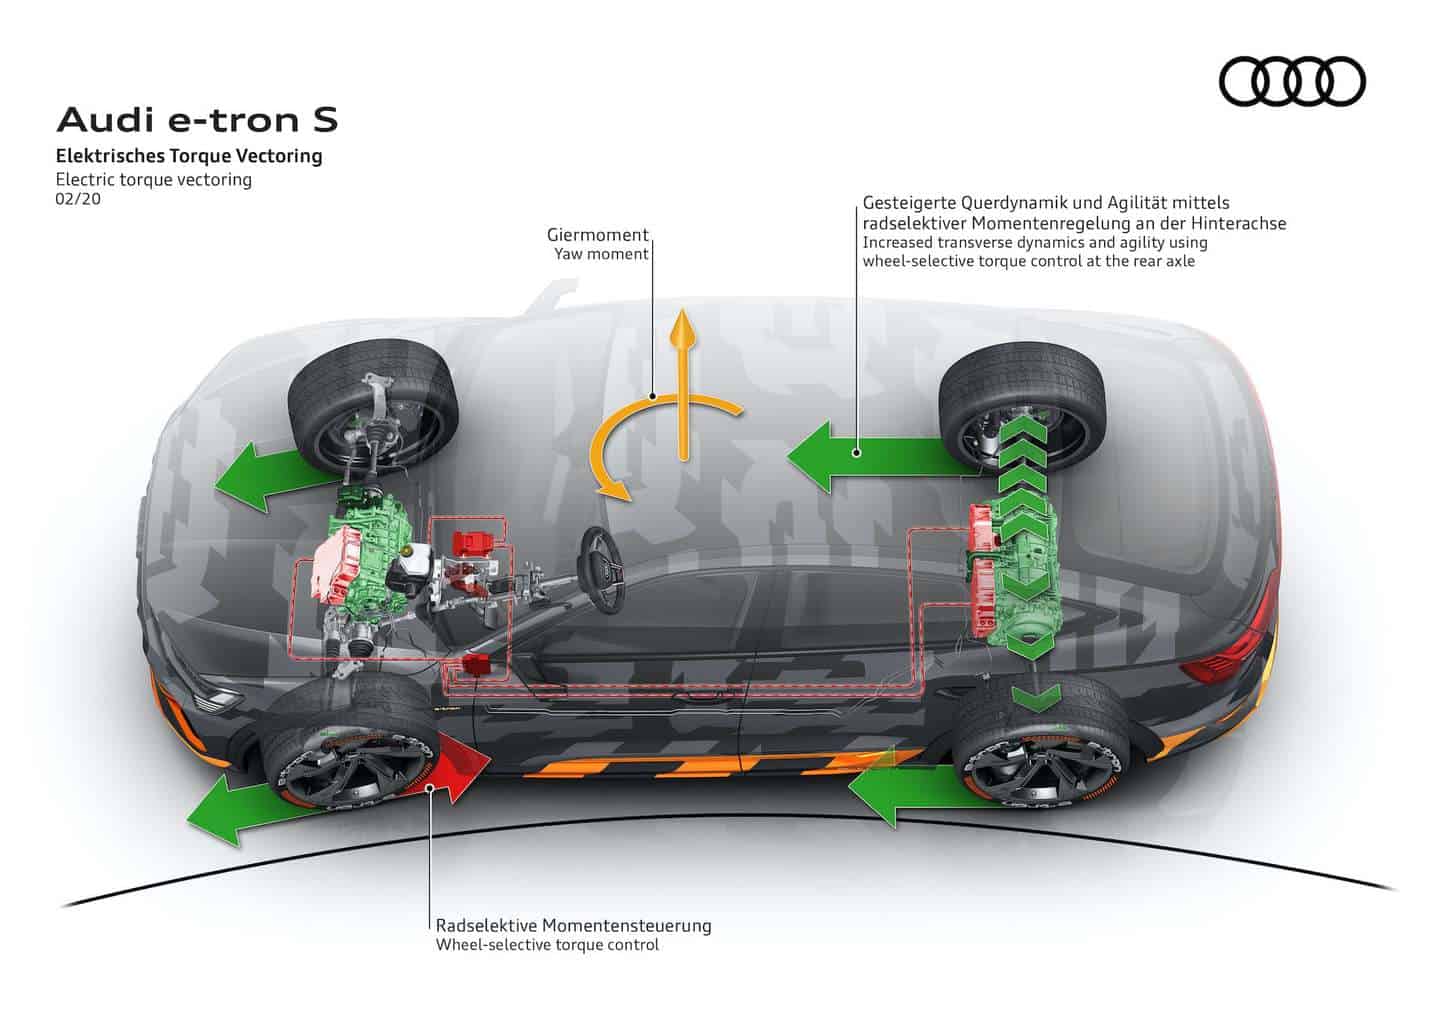 Audi quattro e-tron Elektroauto Torque Vectoring